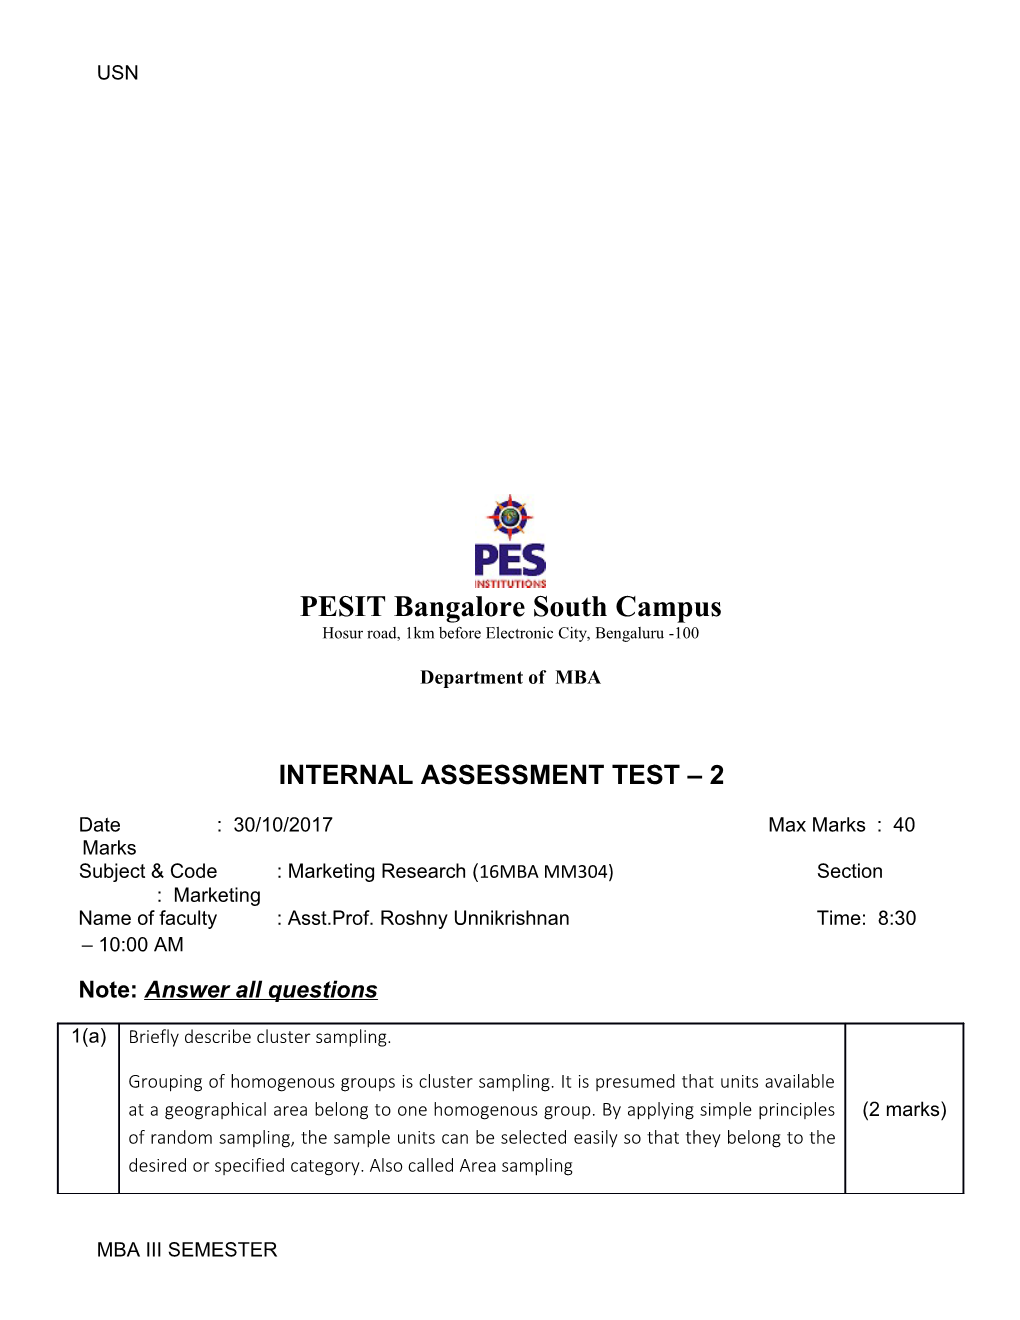 Internal Assessment Test 2